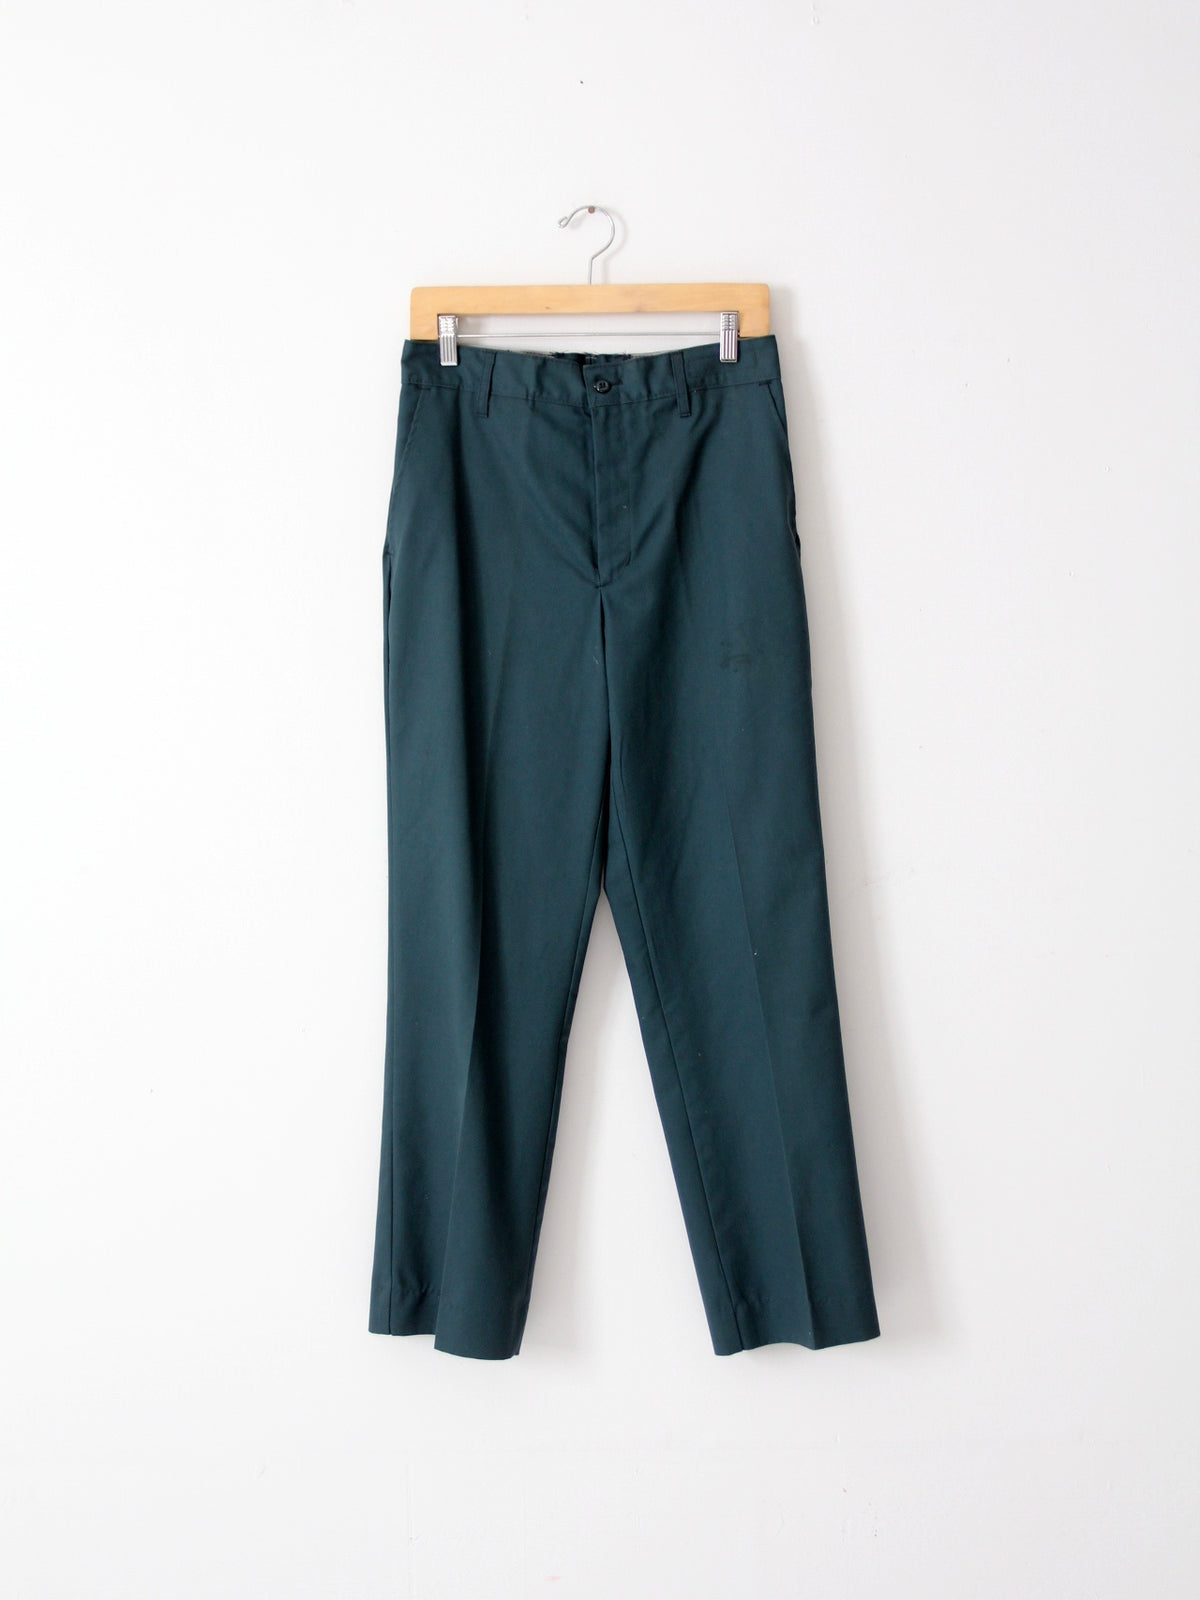 vintage work pants, 31 x 30